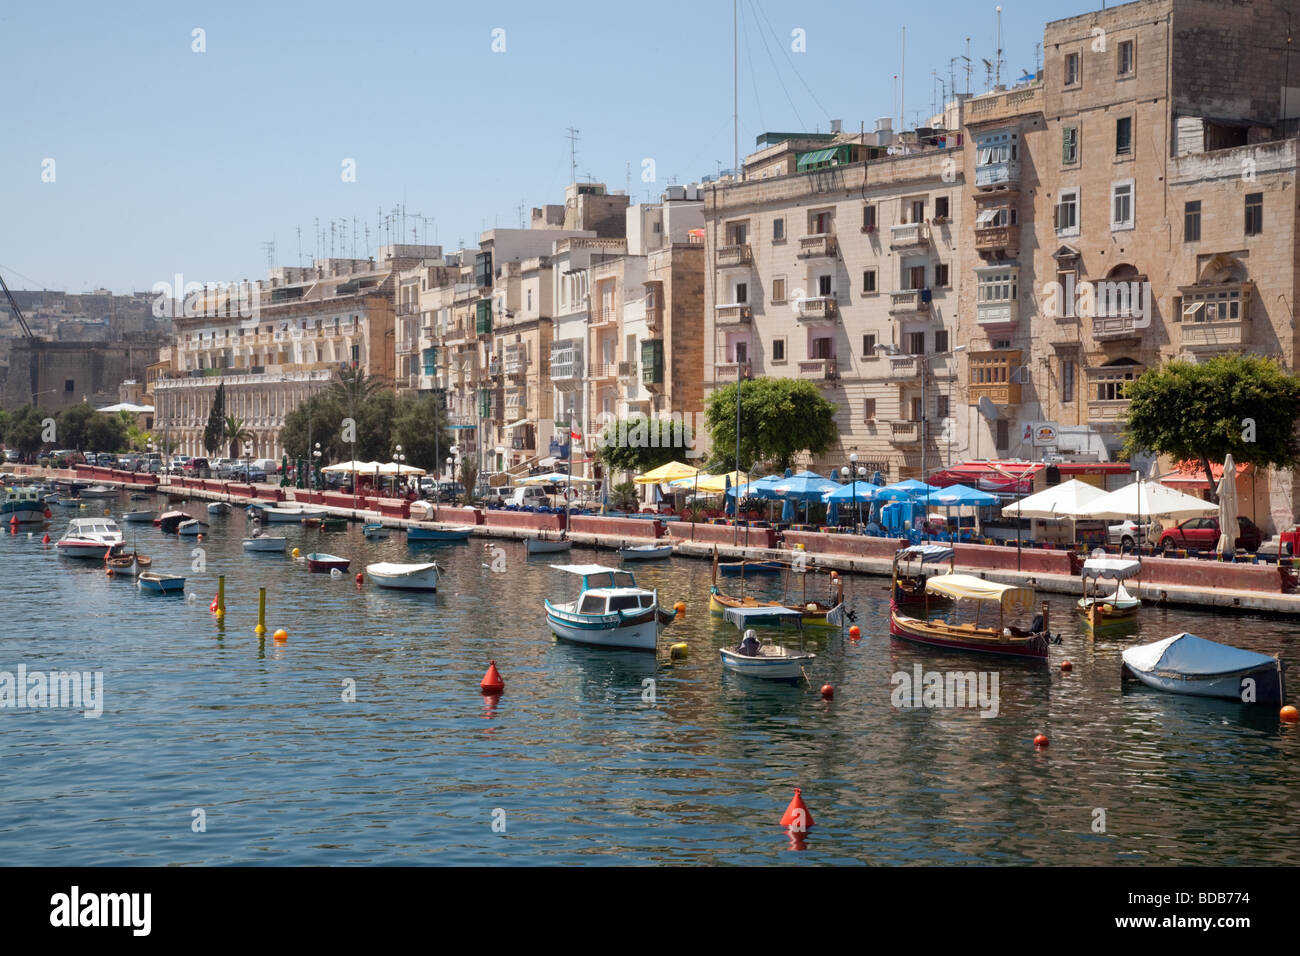 Boats on the waterfront, the Three Cities, Valletta, Malta Stock Photo